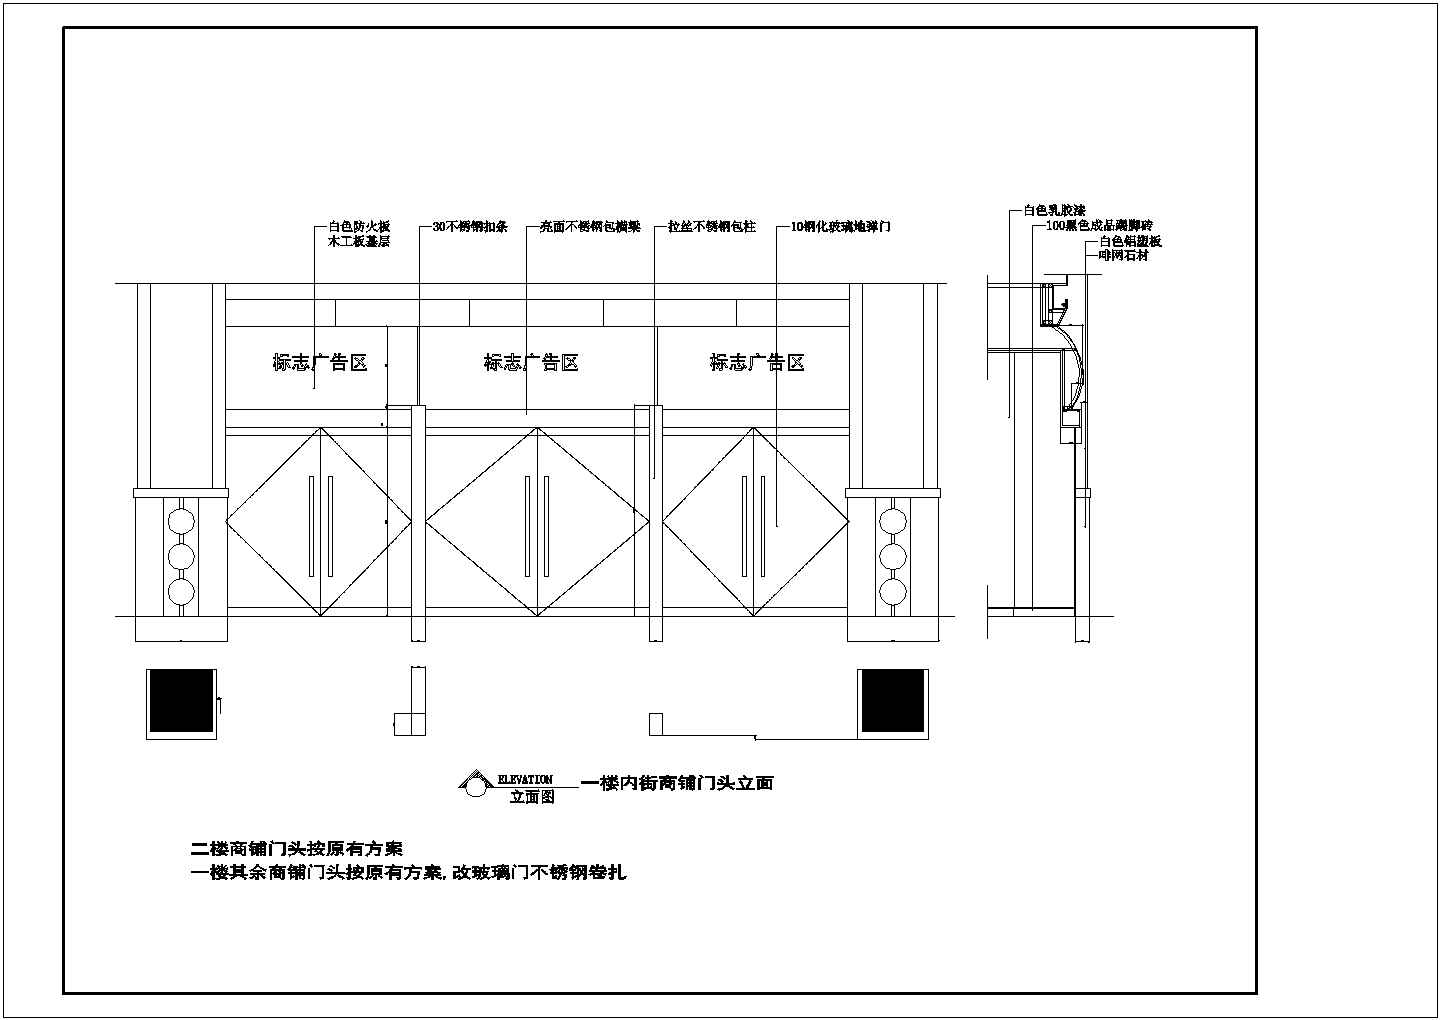 南京商业步行街室内装修施工设计cad图纸(含二至五层地平面图)